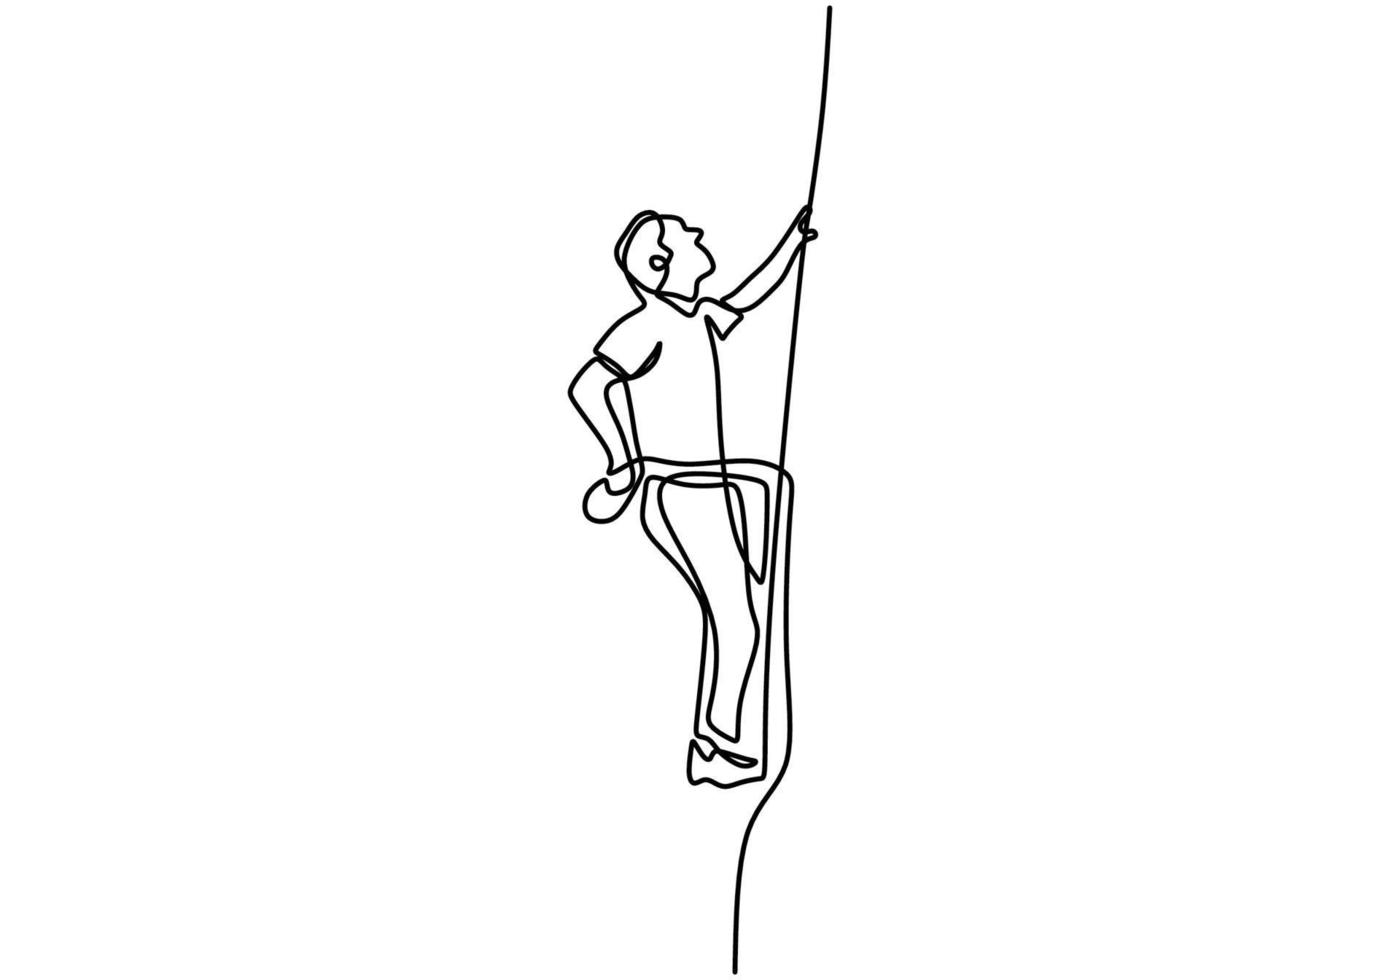 continuo un disegno a tratteggio dell'uomo che fa arrampicata. energico giovane maschio pratiche arrampicata su roccia la corda per la sicurezza isolata su sfondo bianco. personaggio un ragazzo in arrampicata su roccia. vettore